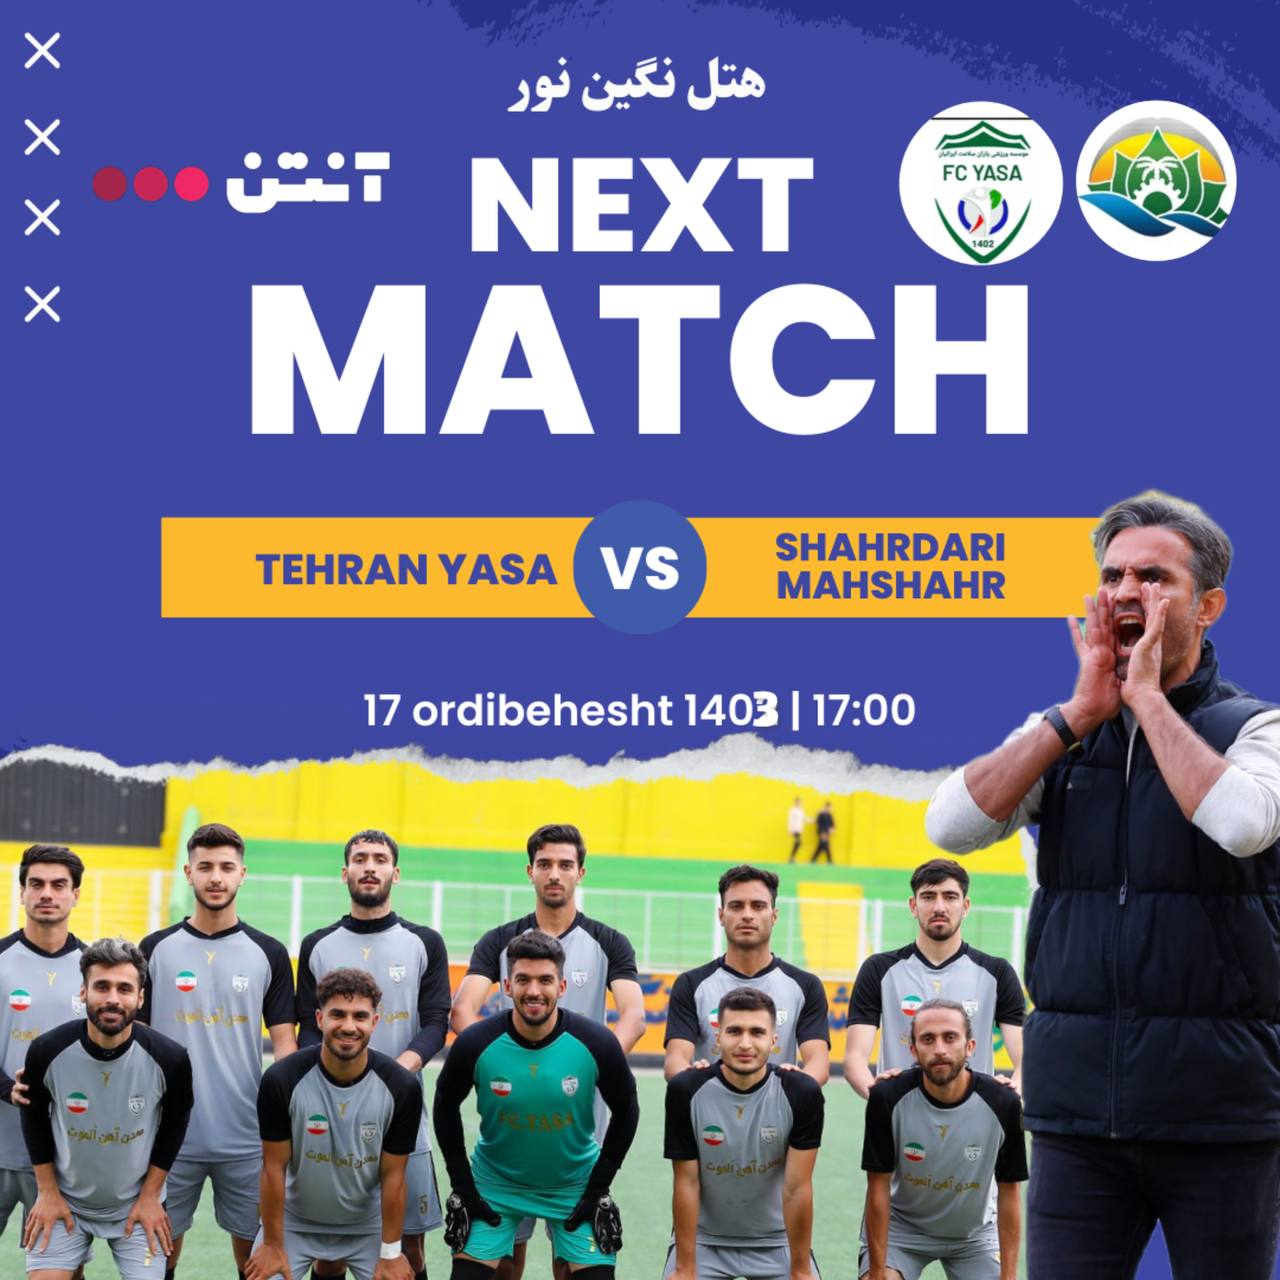 فوتبال تهران یاسا - شهرداری ماهشهر 